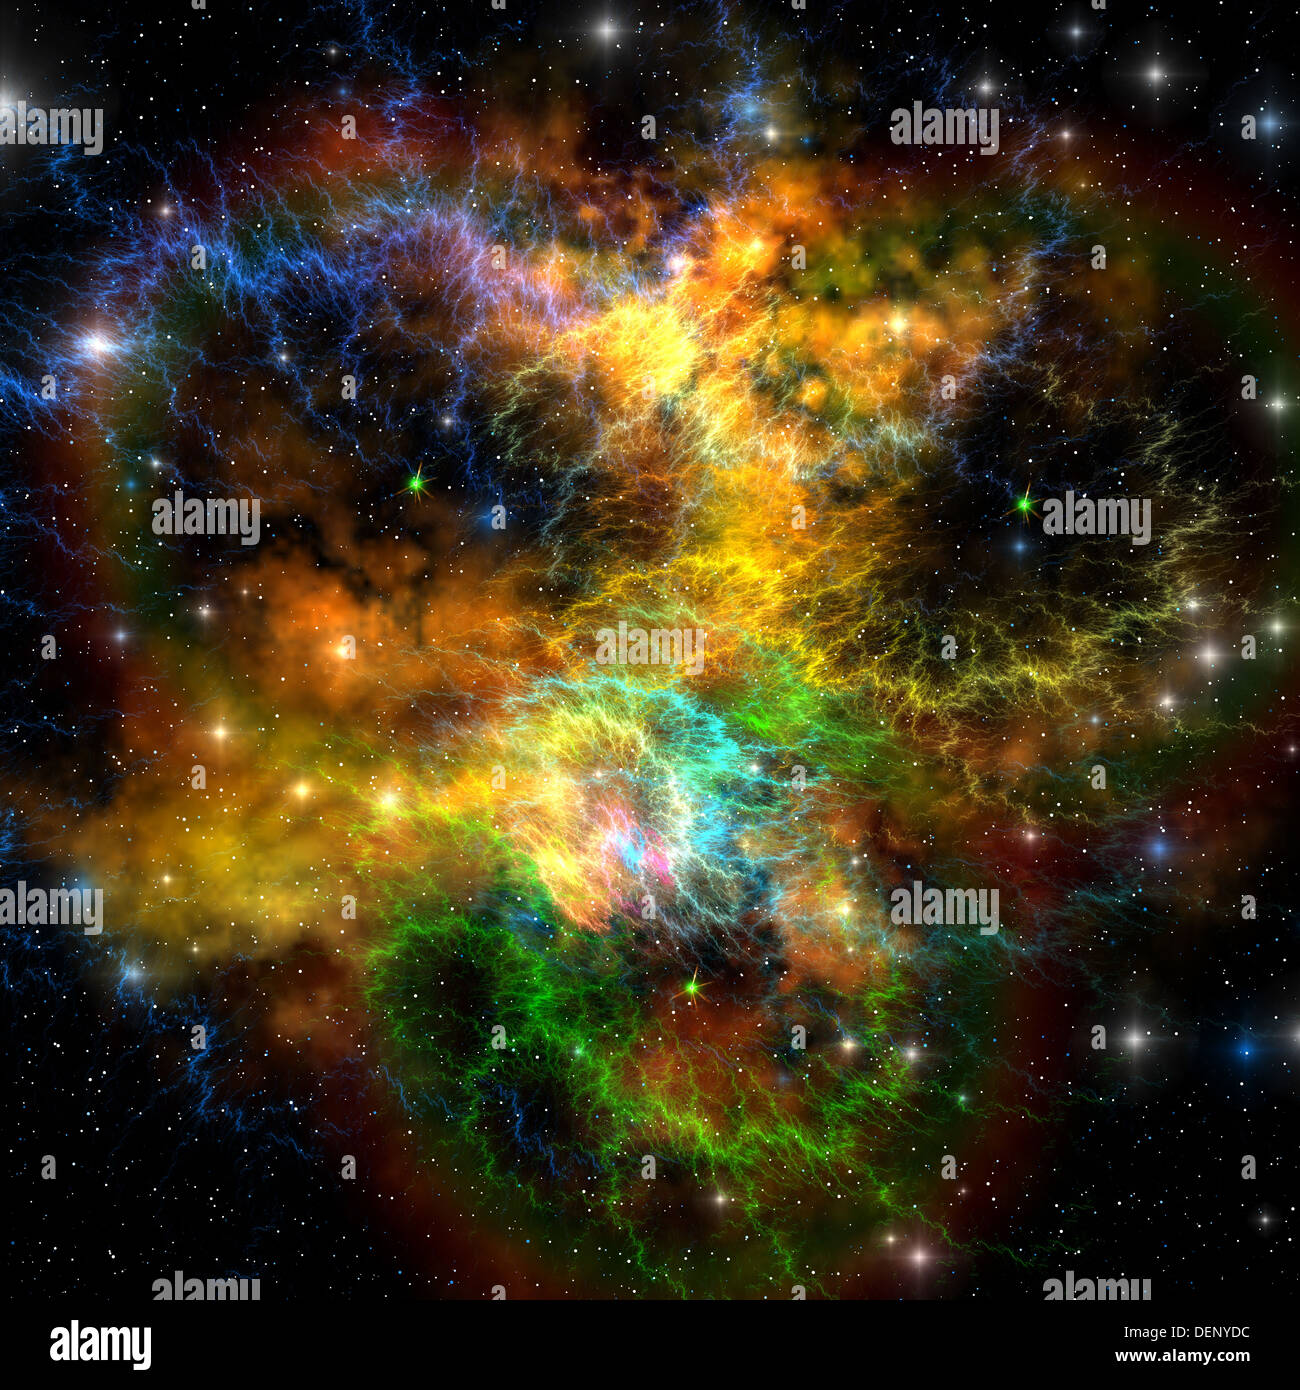 Multi-nastri colorati e nubi gassose compongono questa nebulosa nel cosmo. Foto Stock